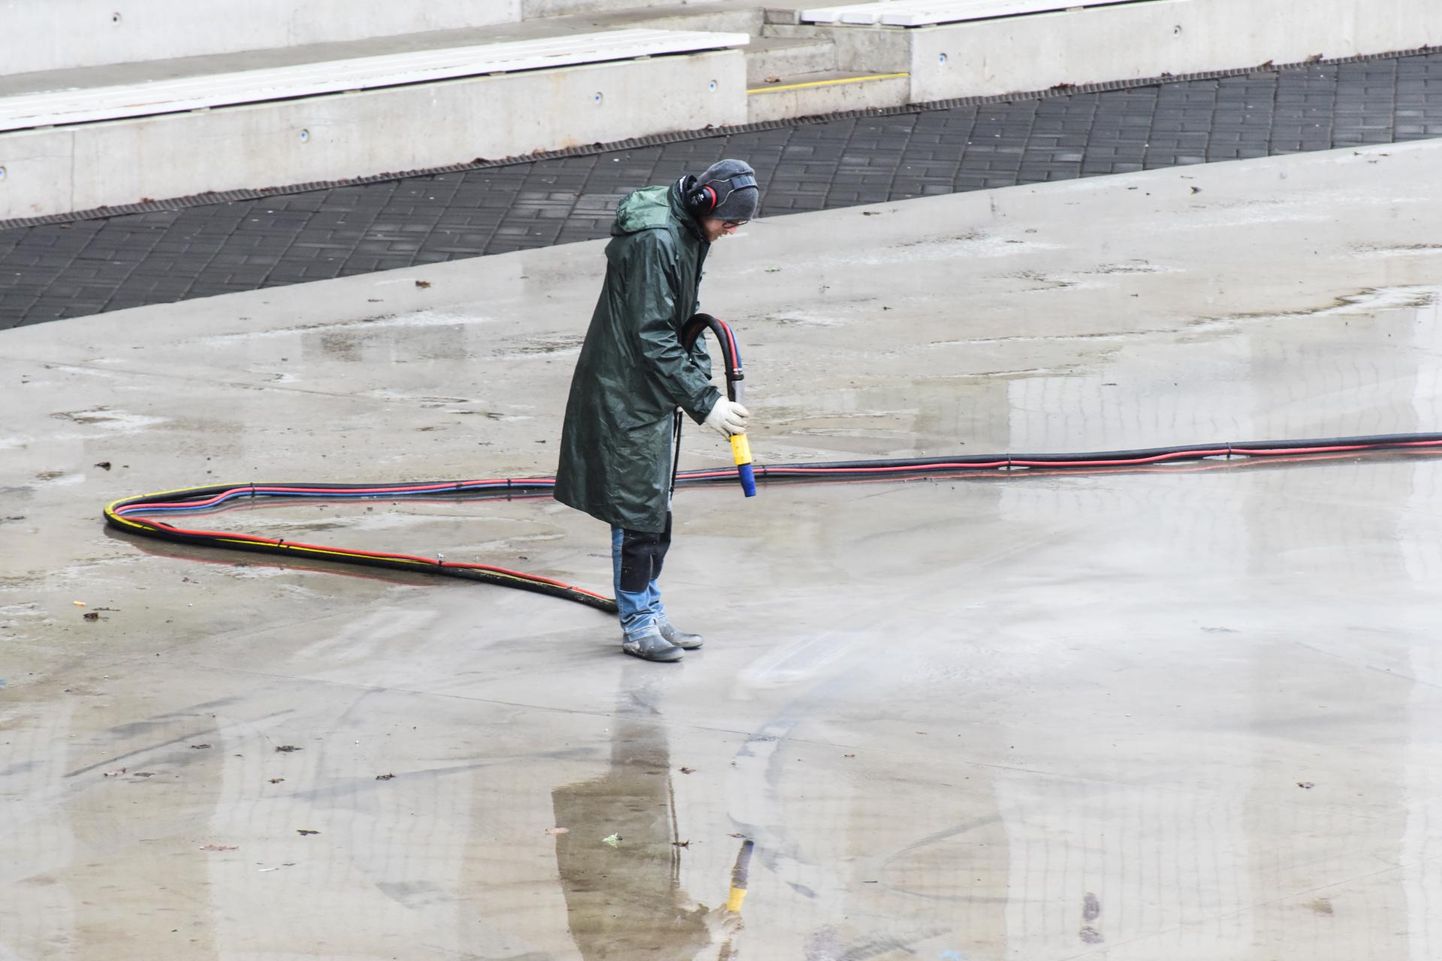 Чтобы убрать следы шин с бетона, горуправа Вильянди заказала чистку содоструйным аппаратом, которую провел Герт-Каупо Кяхр.